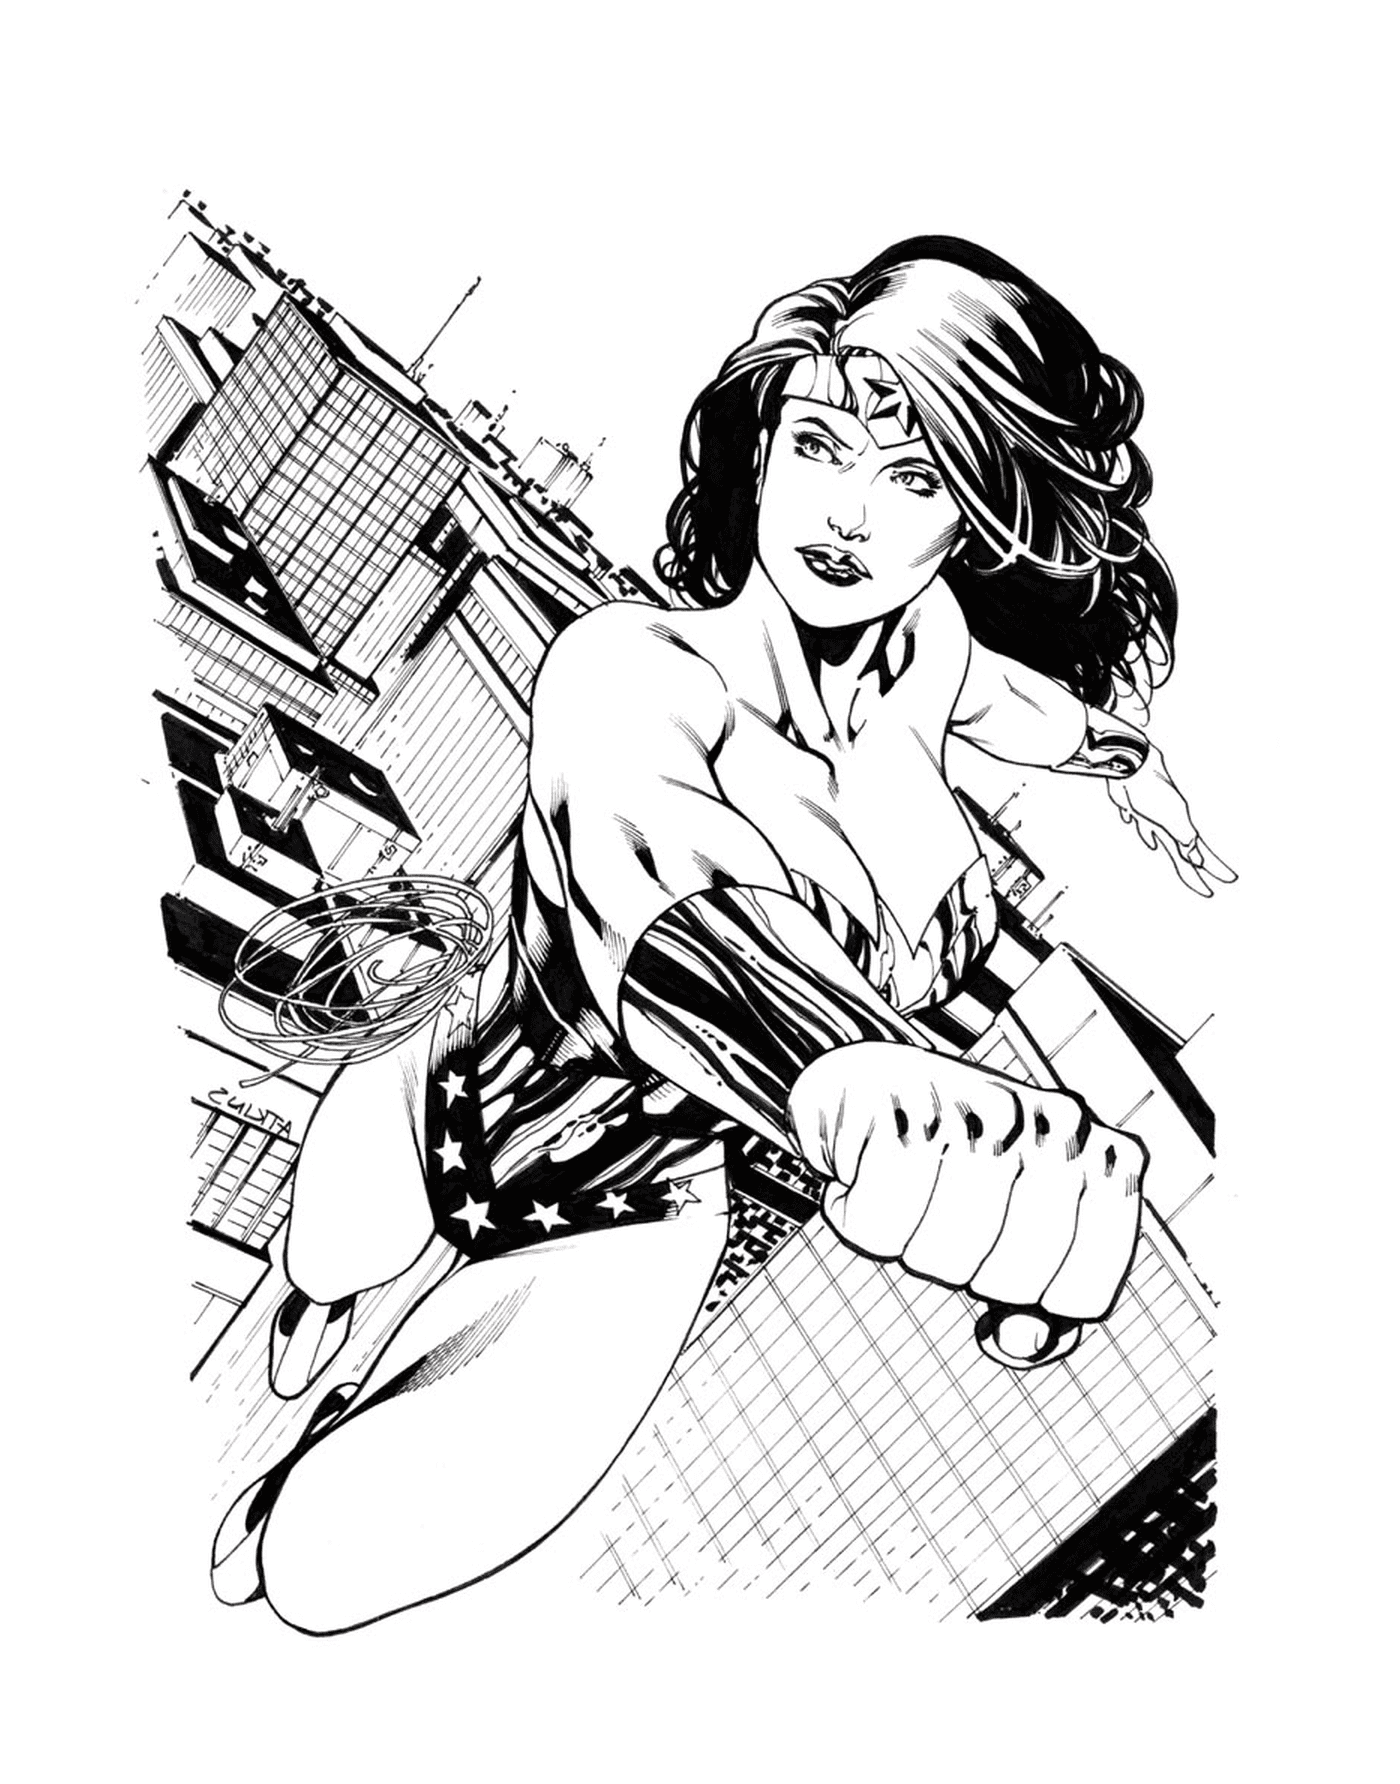  Wonder Woman's Sketch di Ratkins 